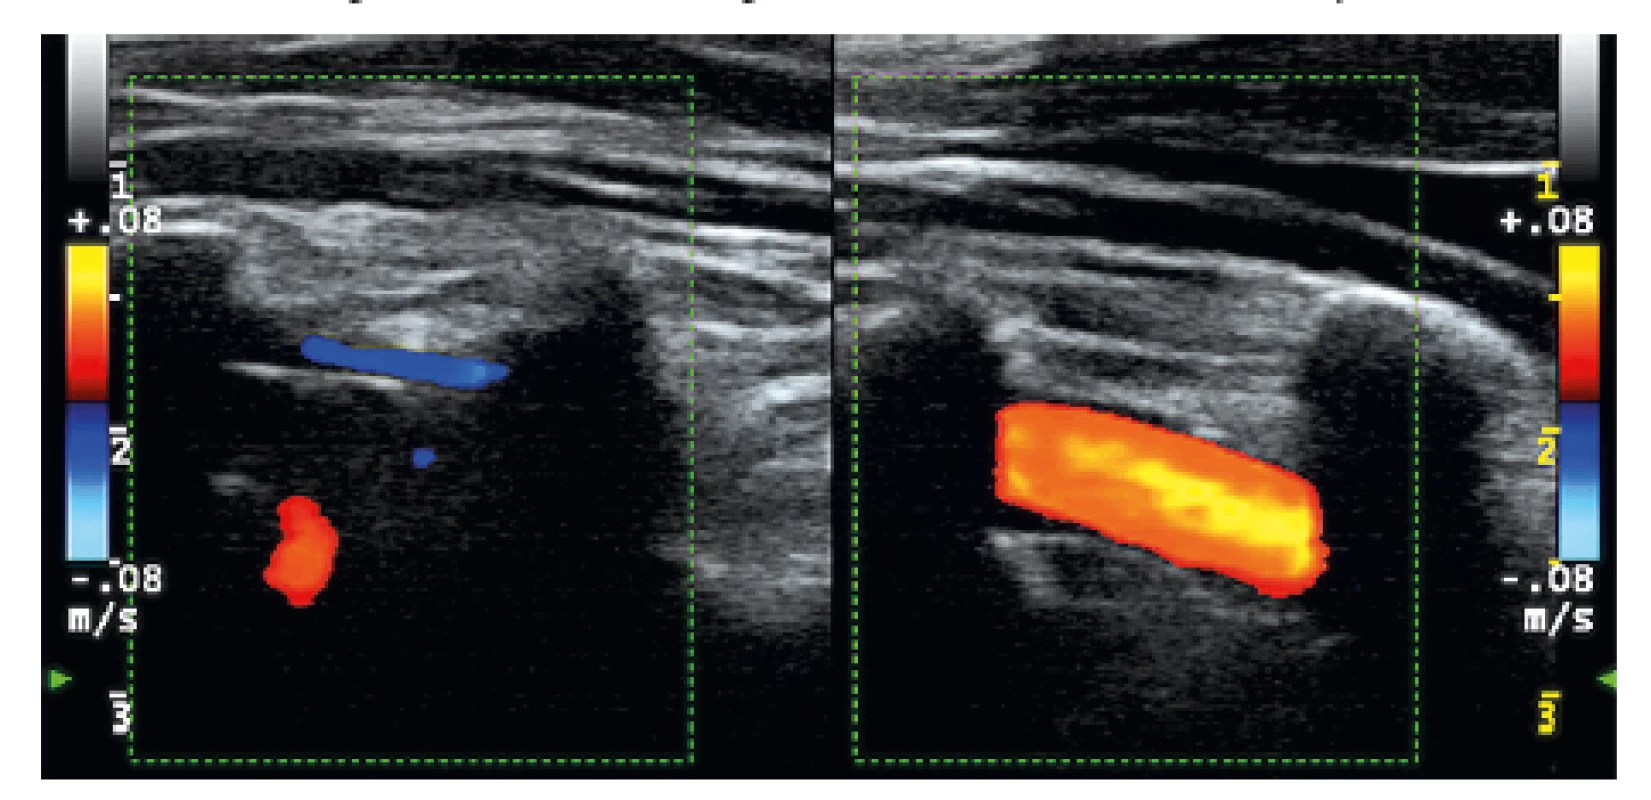 Vľavo je oklúzia AV dx (modrý aj červený signál
z paravertebrálnych vén, v lúmene ohraničenom tenkou stenou
bez AS plátov nie je signál z prietoku), vpravo je normálny
prietok v AV sin. (červený signál v lúmene artérie medzi tieňmi
z priečnych výbežkov).